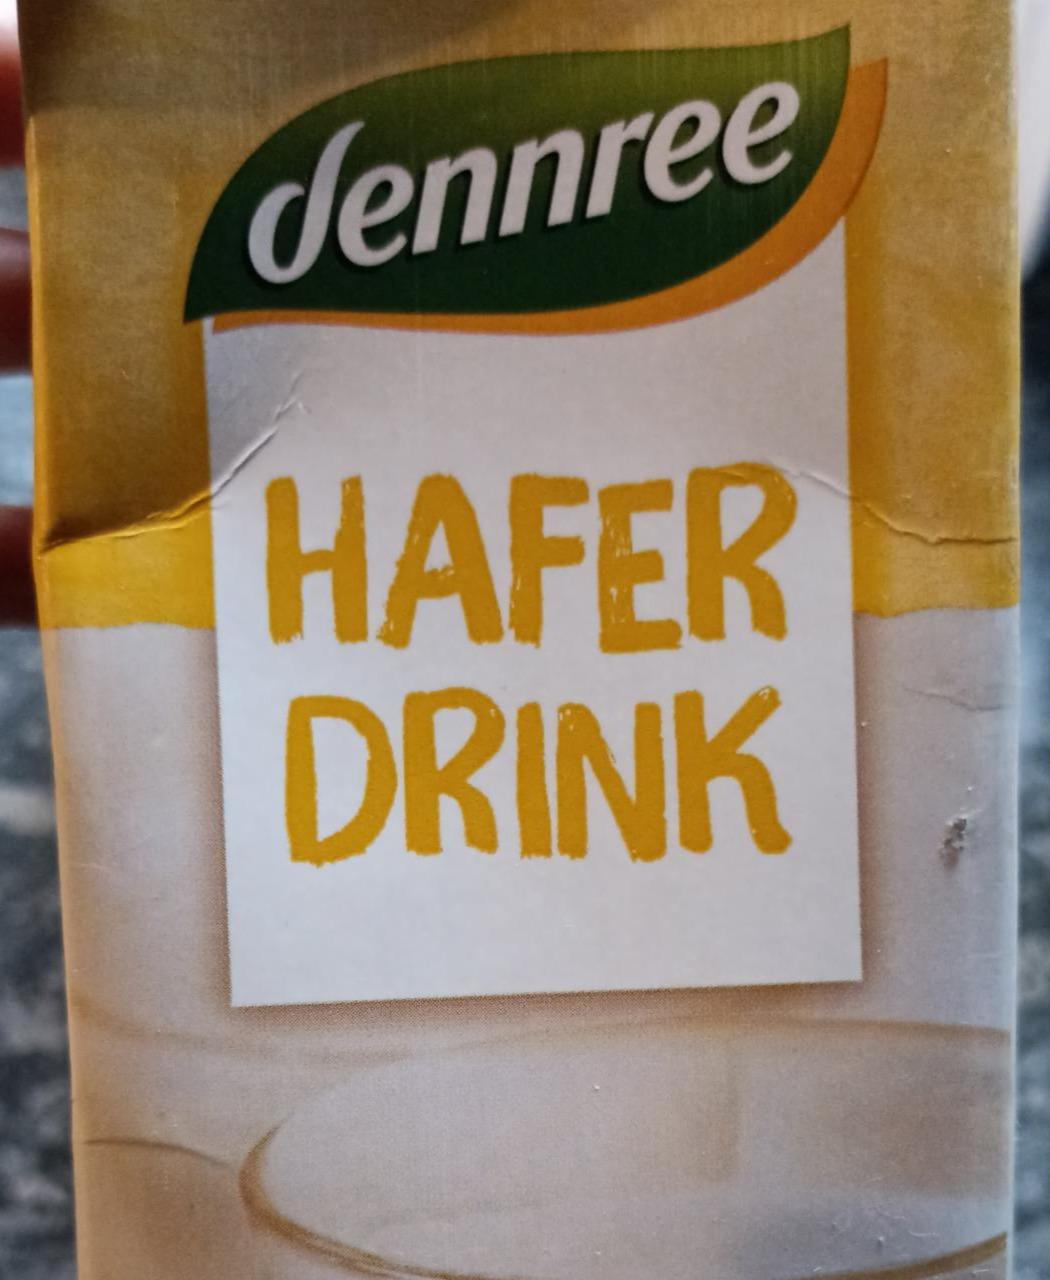 Fotografie - Hafer drink Dennree